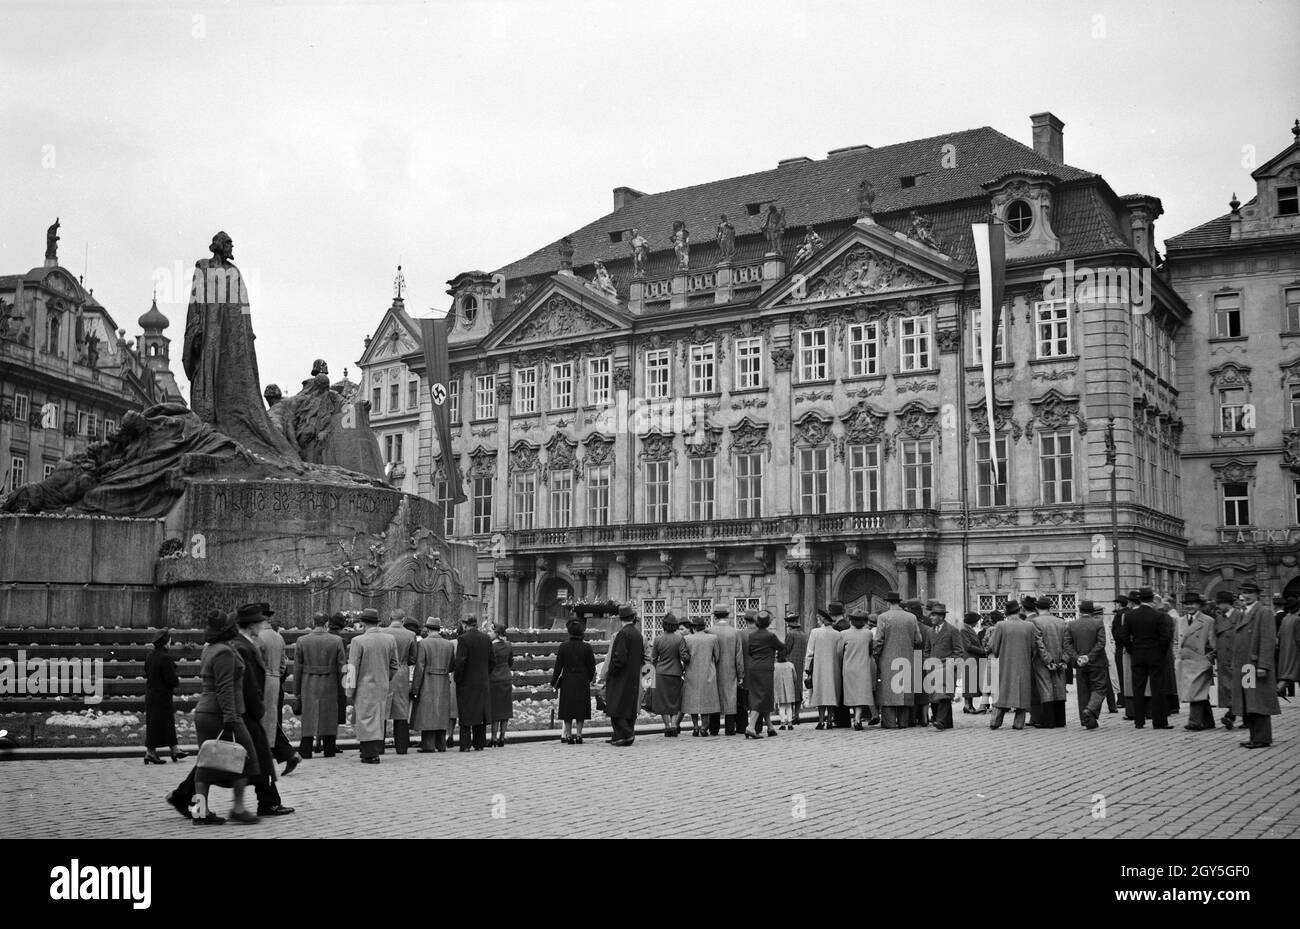 Originalbildunterschrift: Seit der Besatzung genießt das Husdenkmal von den Tschechen besondere Ehrung. Das Husdenkmal am Altstädter Ring, Prag, 1930er Jahre. Stock Photo